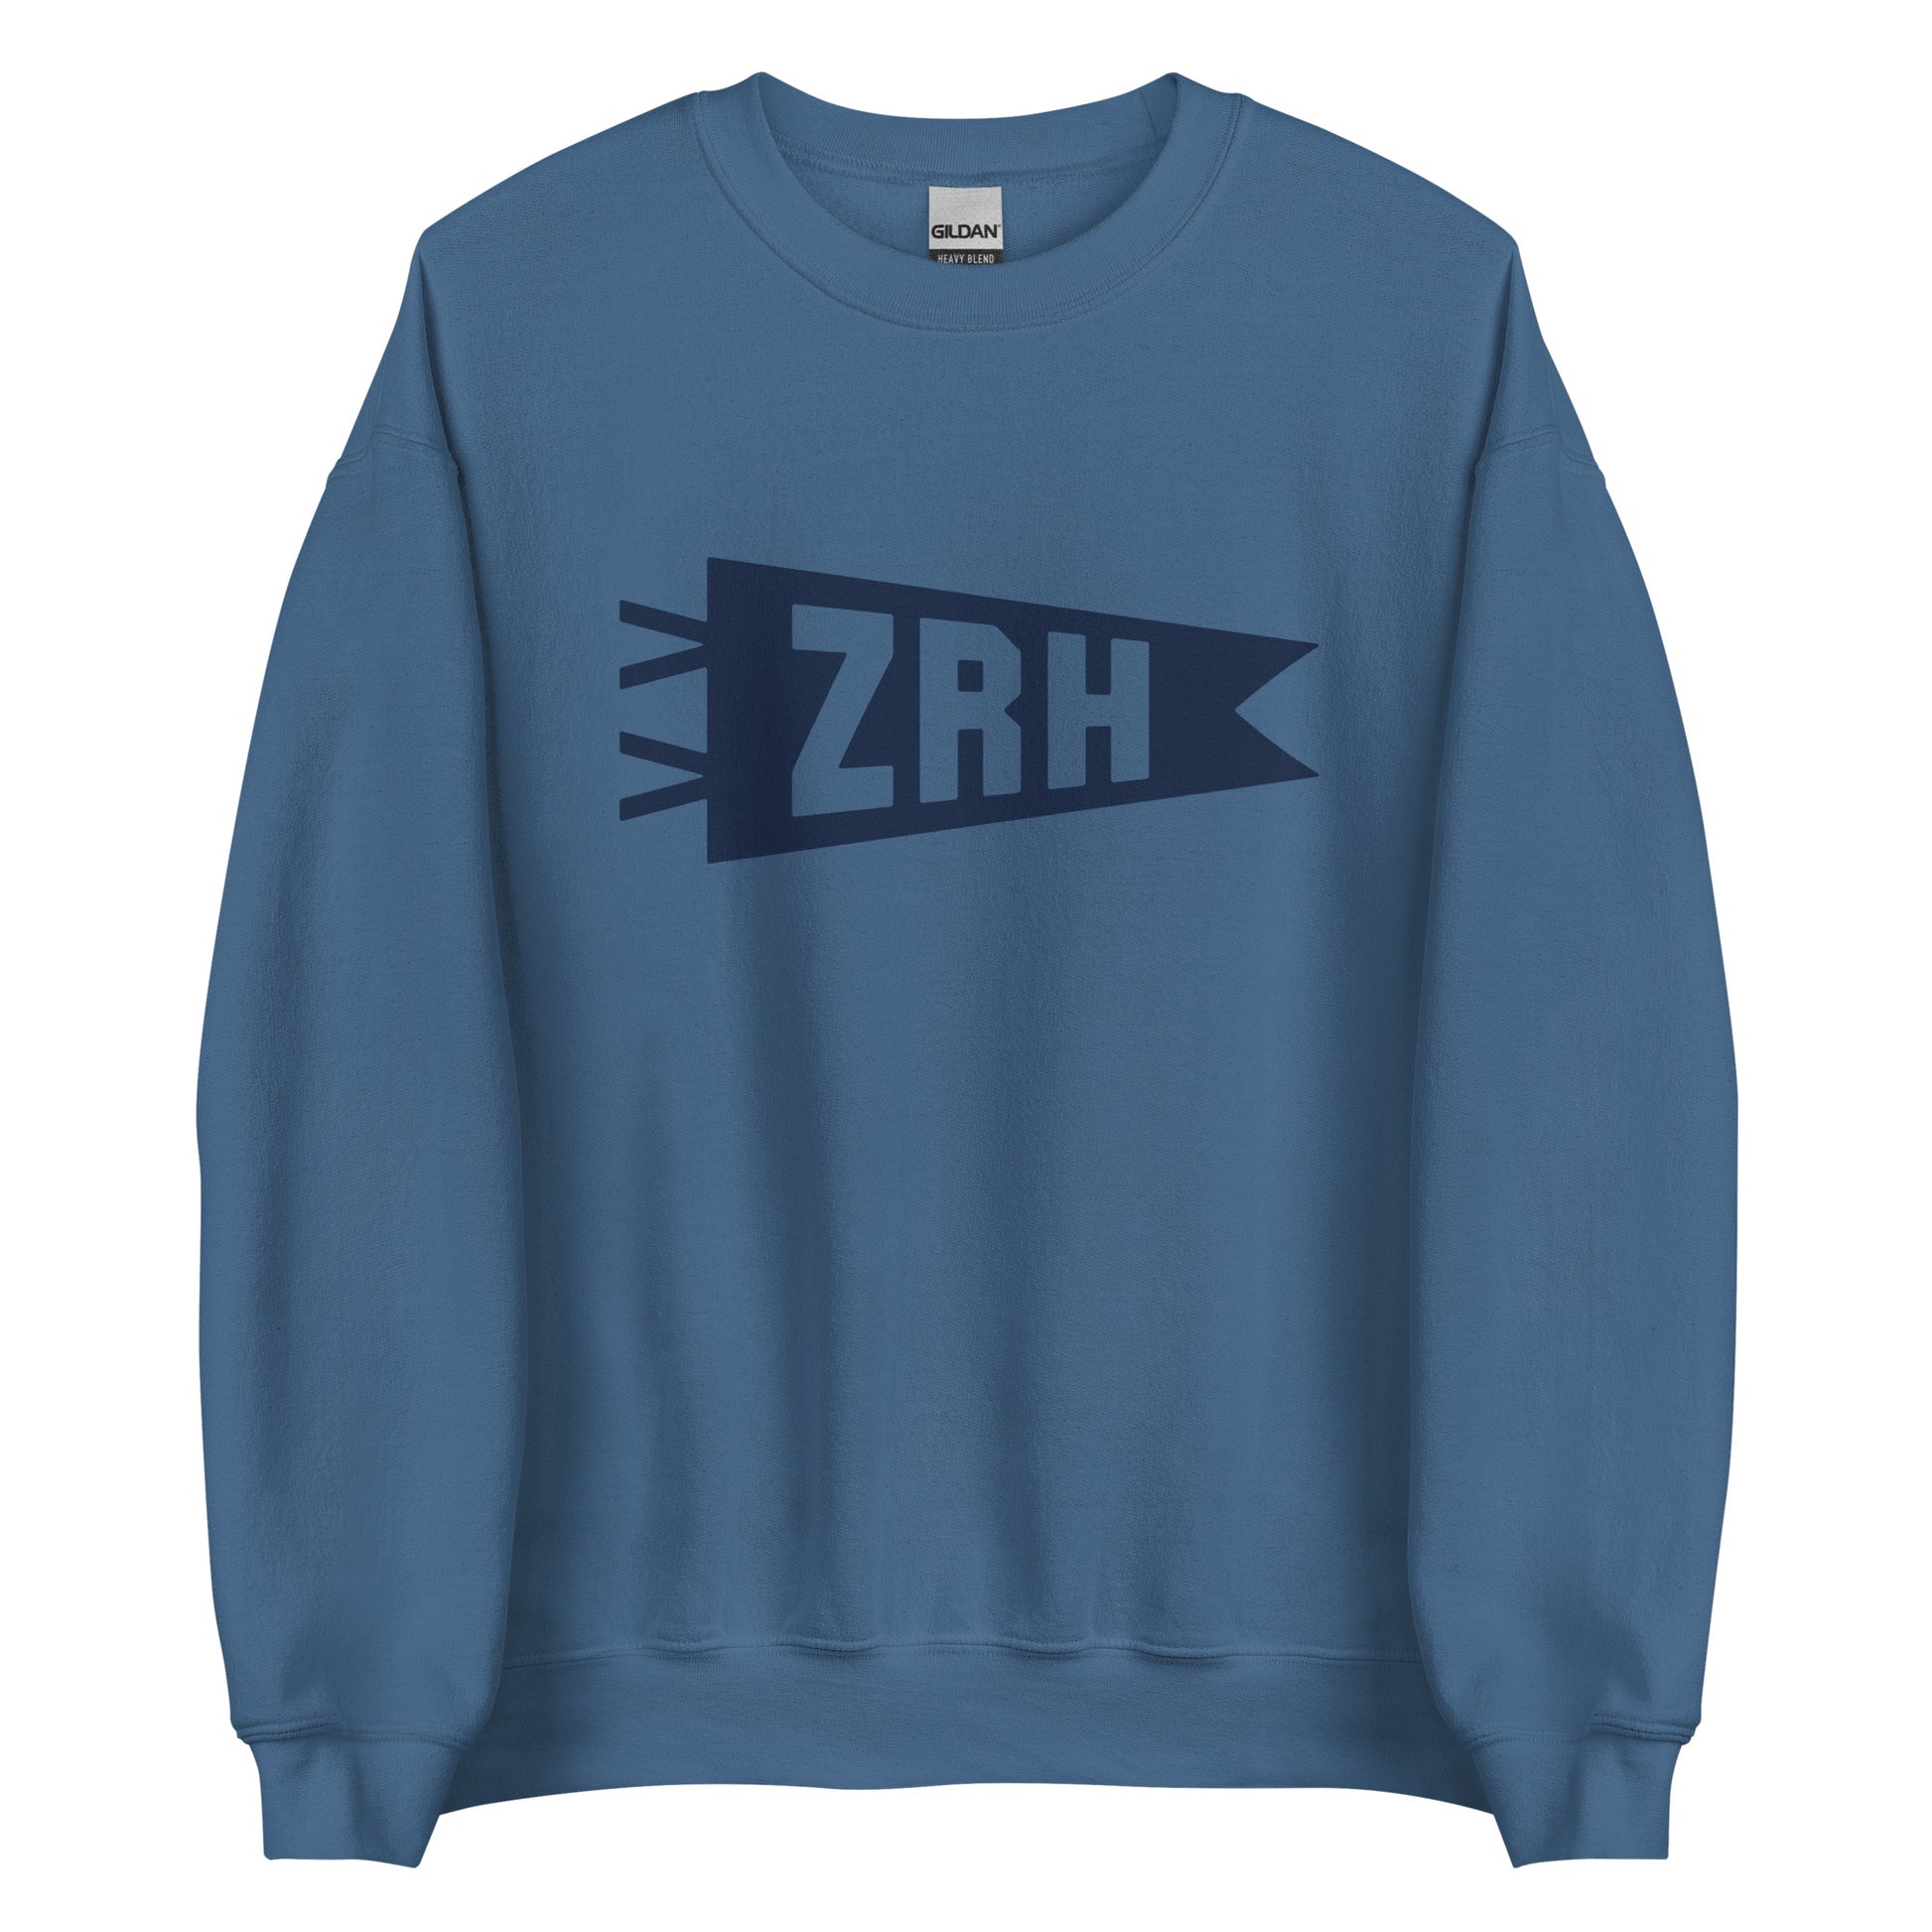 Airport Code Sweatshirt - Navy Blue Graphic • ZRH Zurich • YHM Designs - Image 05